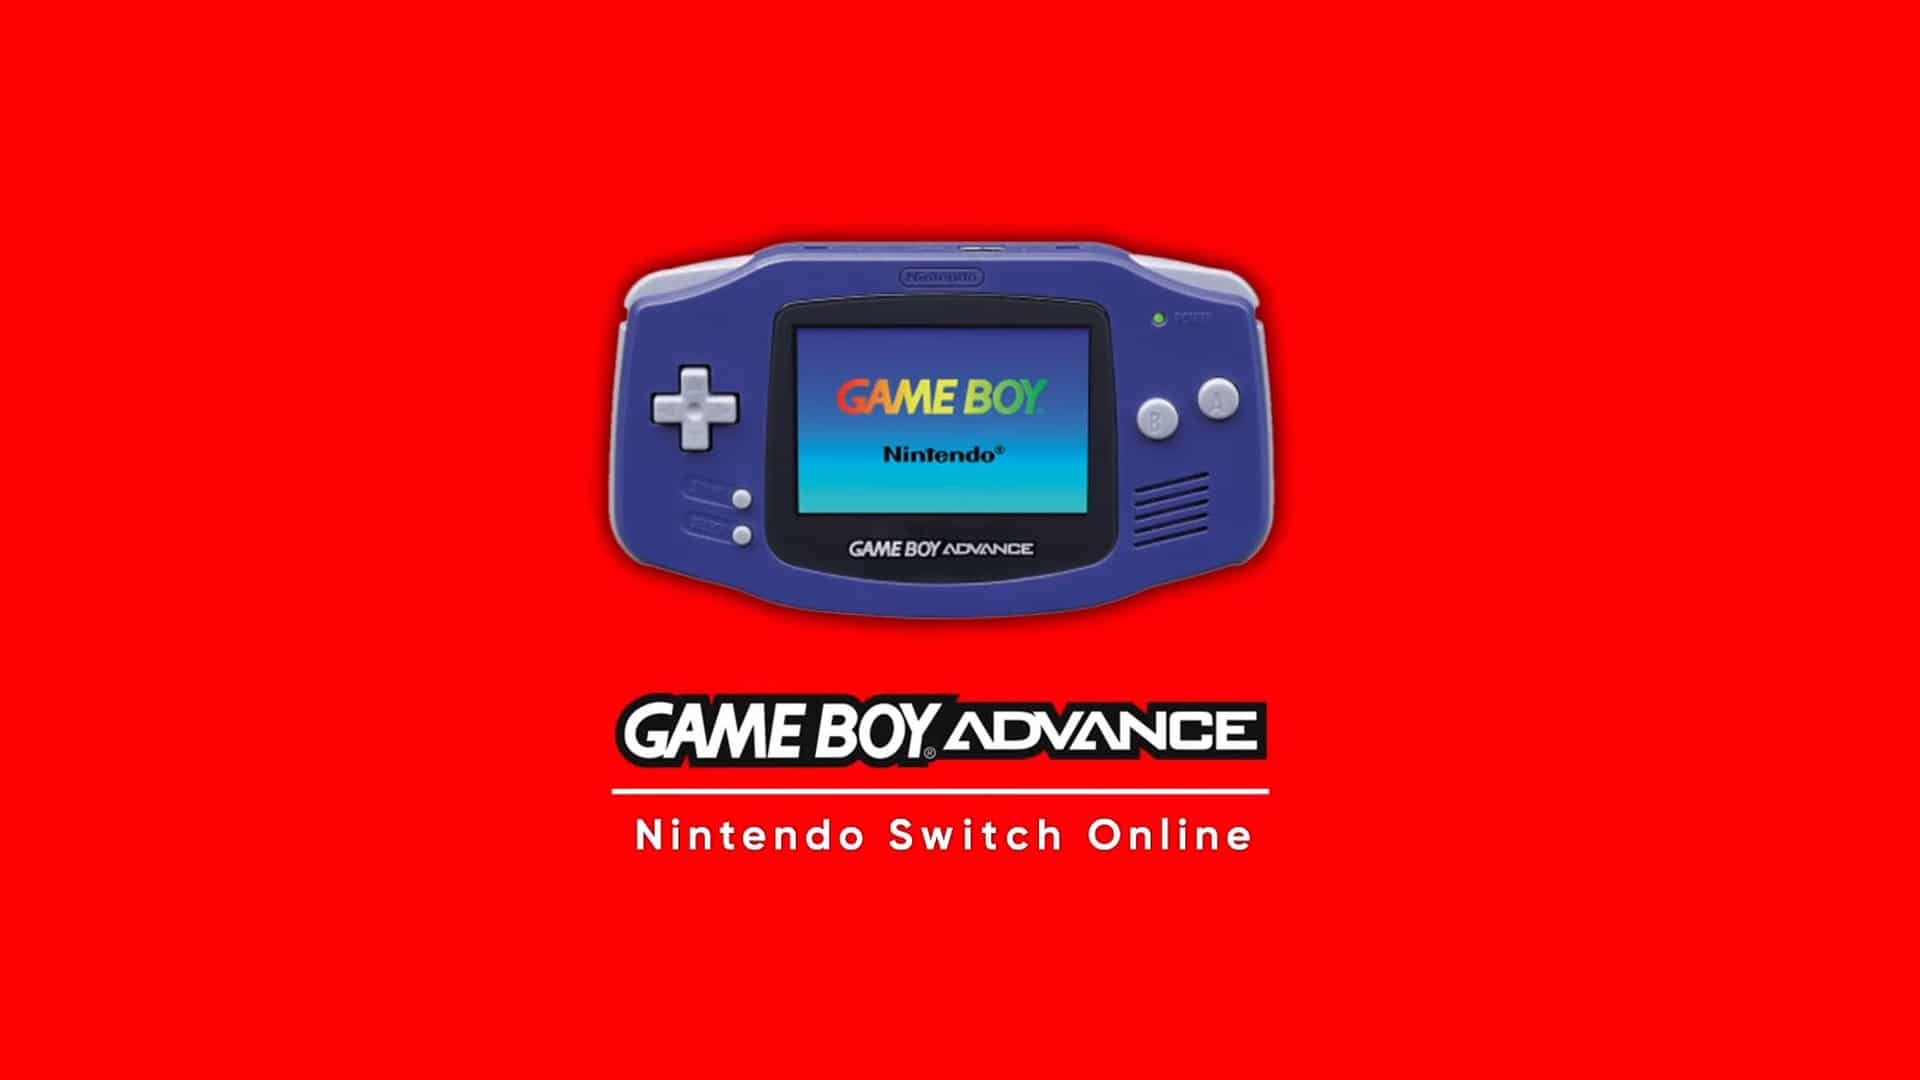 Imaginan cómo sería la implementación de Game Boy Advance en Nintendo Switch Online